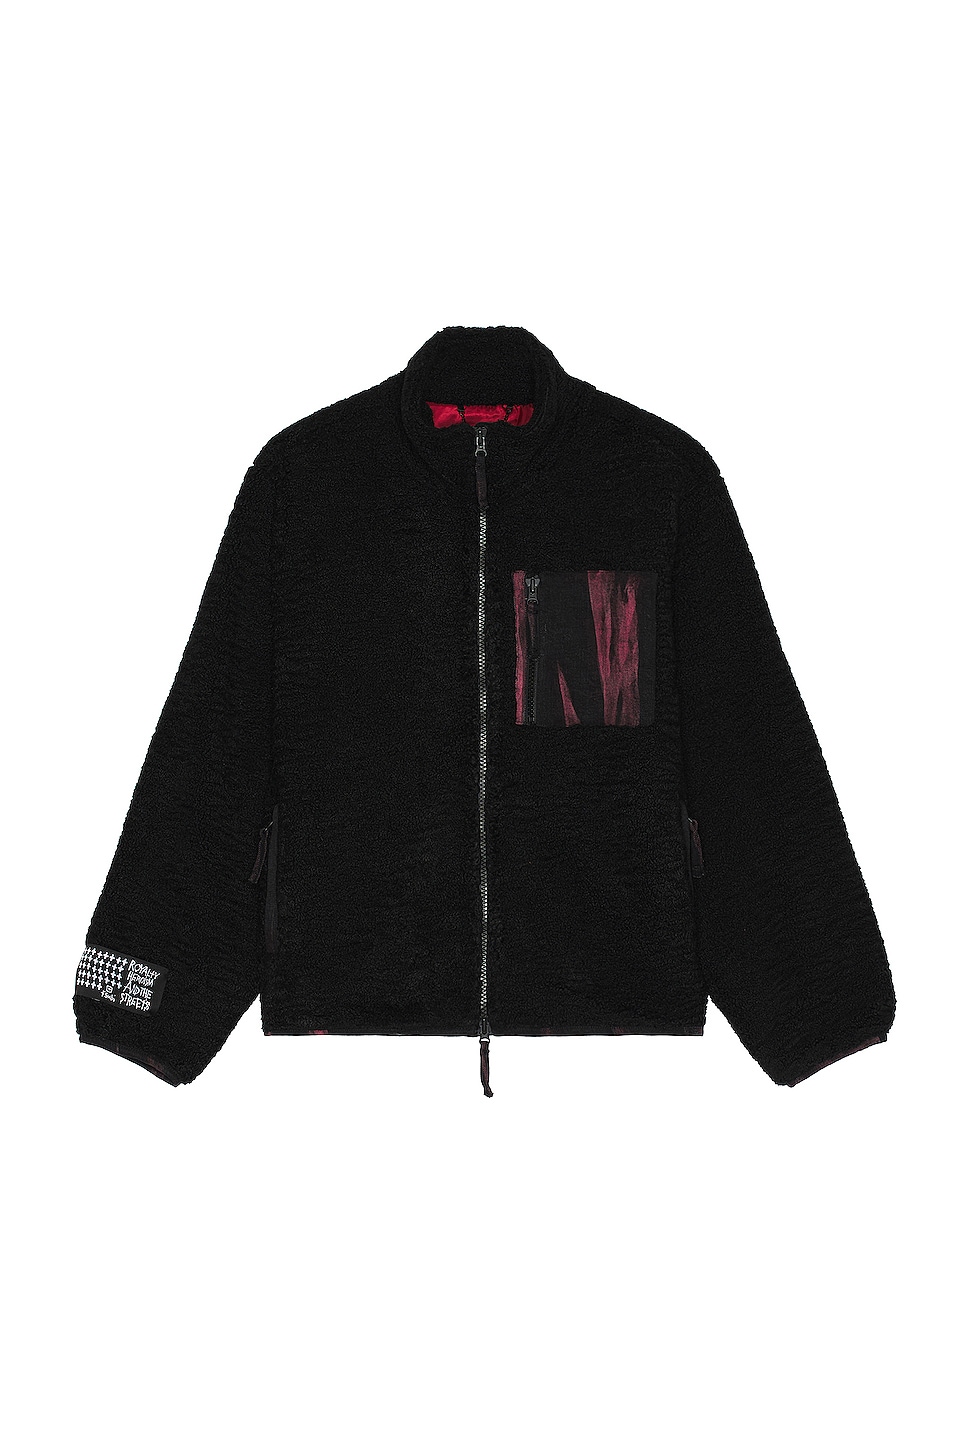 Image 1 of Ksubi Icebreaker Zip Sweater in Black